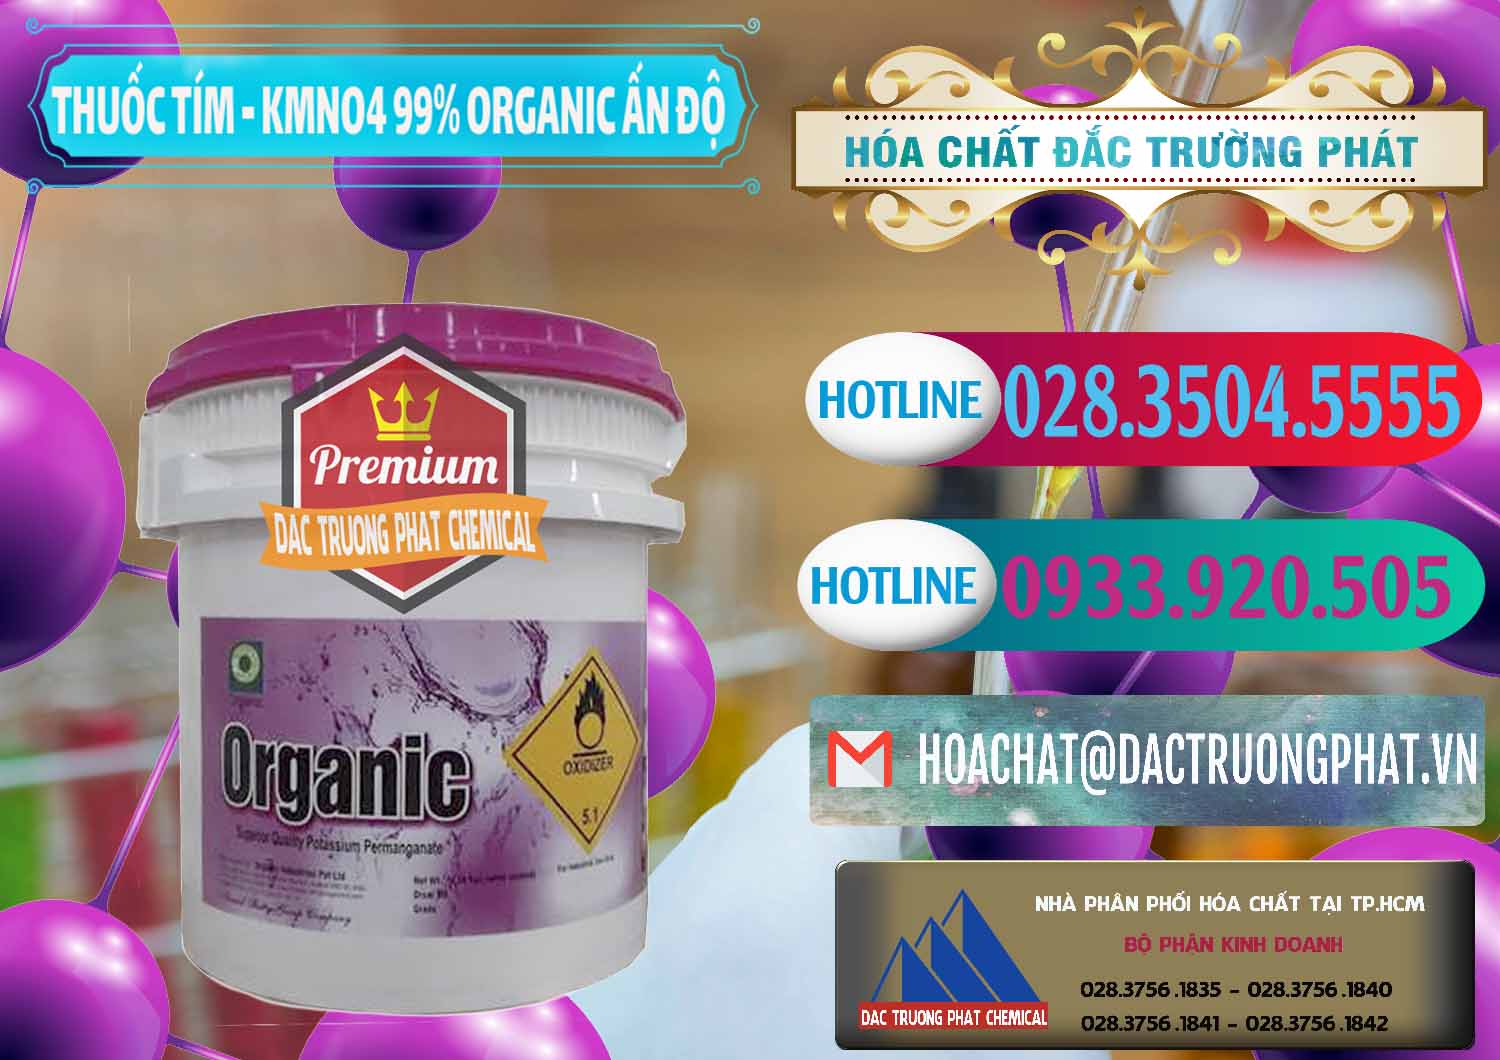 Cty chuyên cung cấp & bán Thuốc Tím - KMNO4 99% Organic Ấn Độ India - 0216 - Nơi chuyên phân phối và kinh doanh hóa chất tại TP.HCM - truongphat.vn